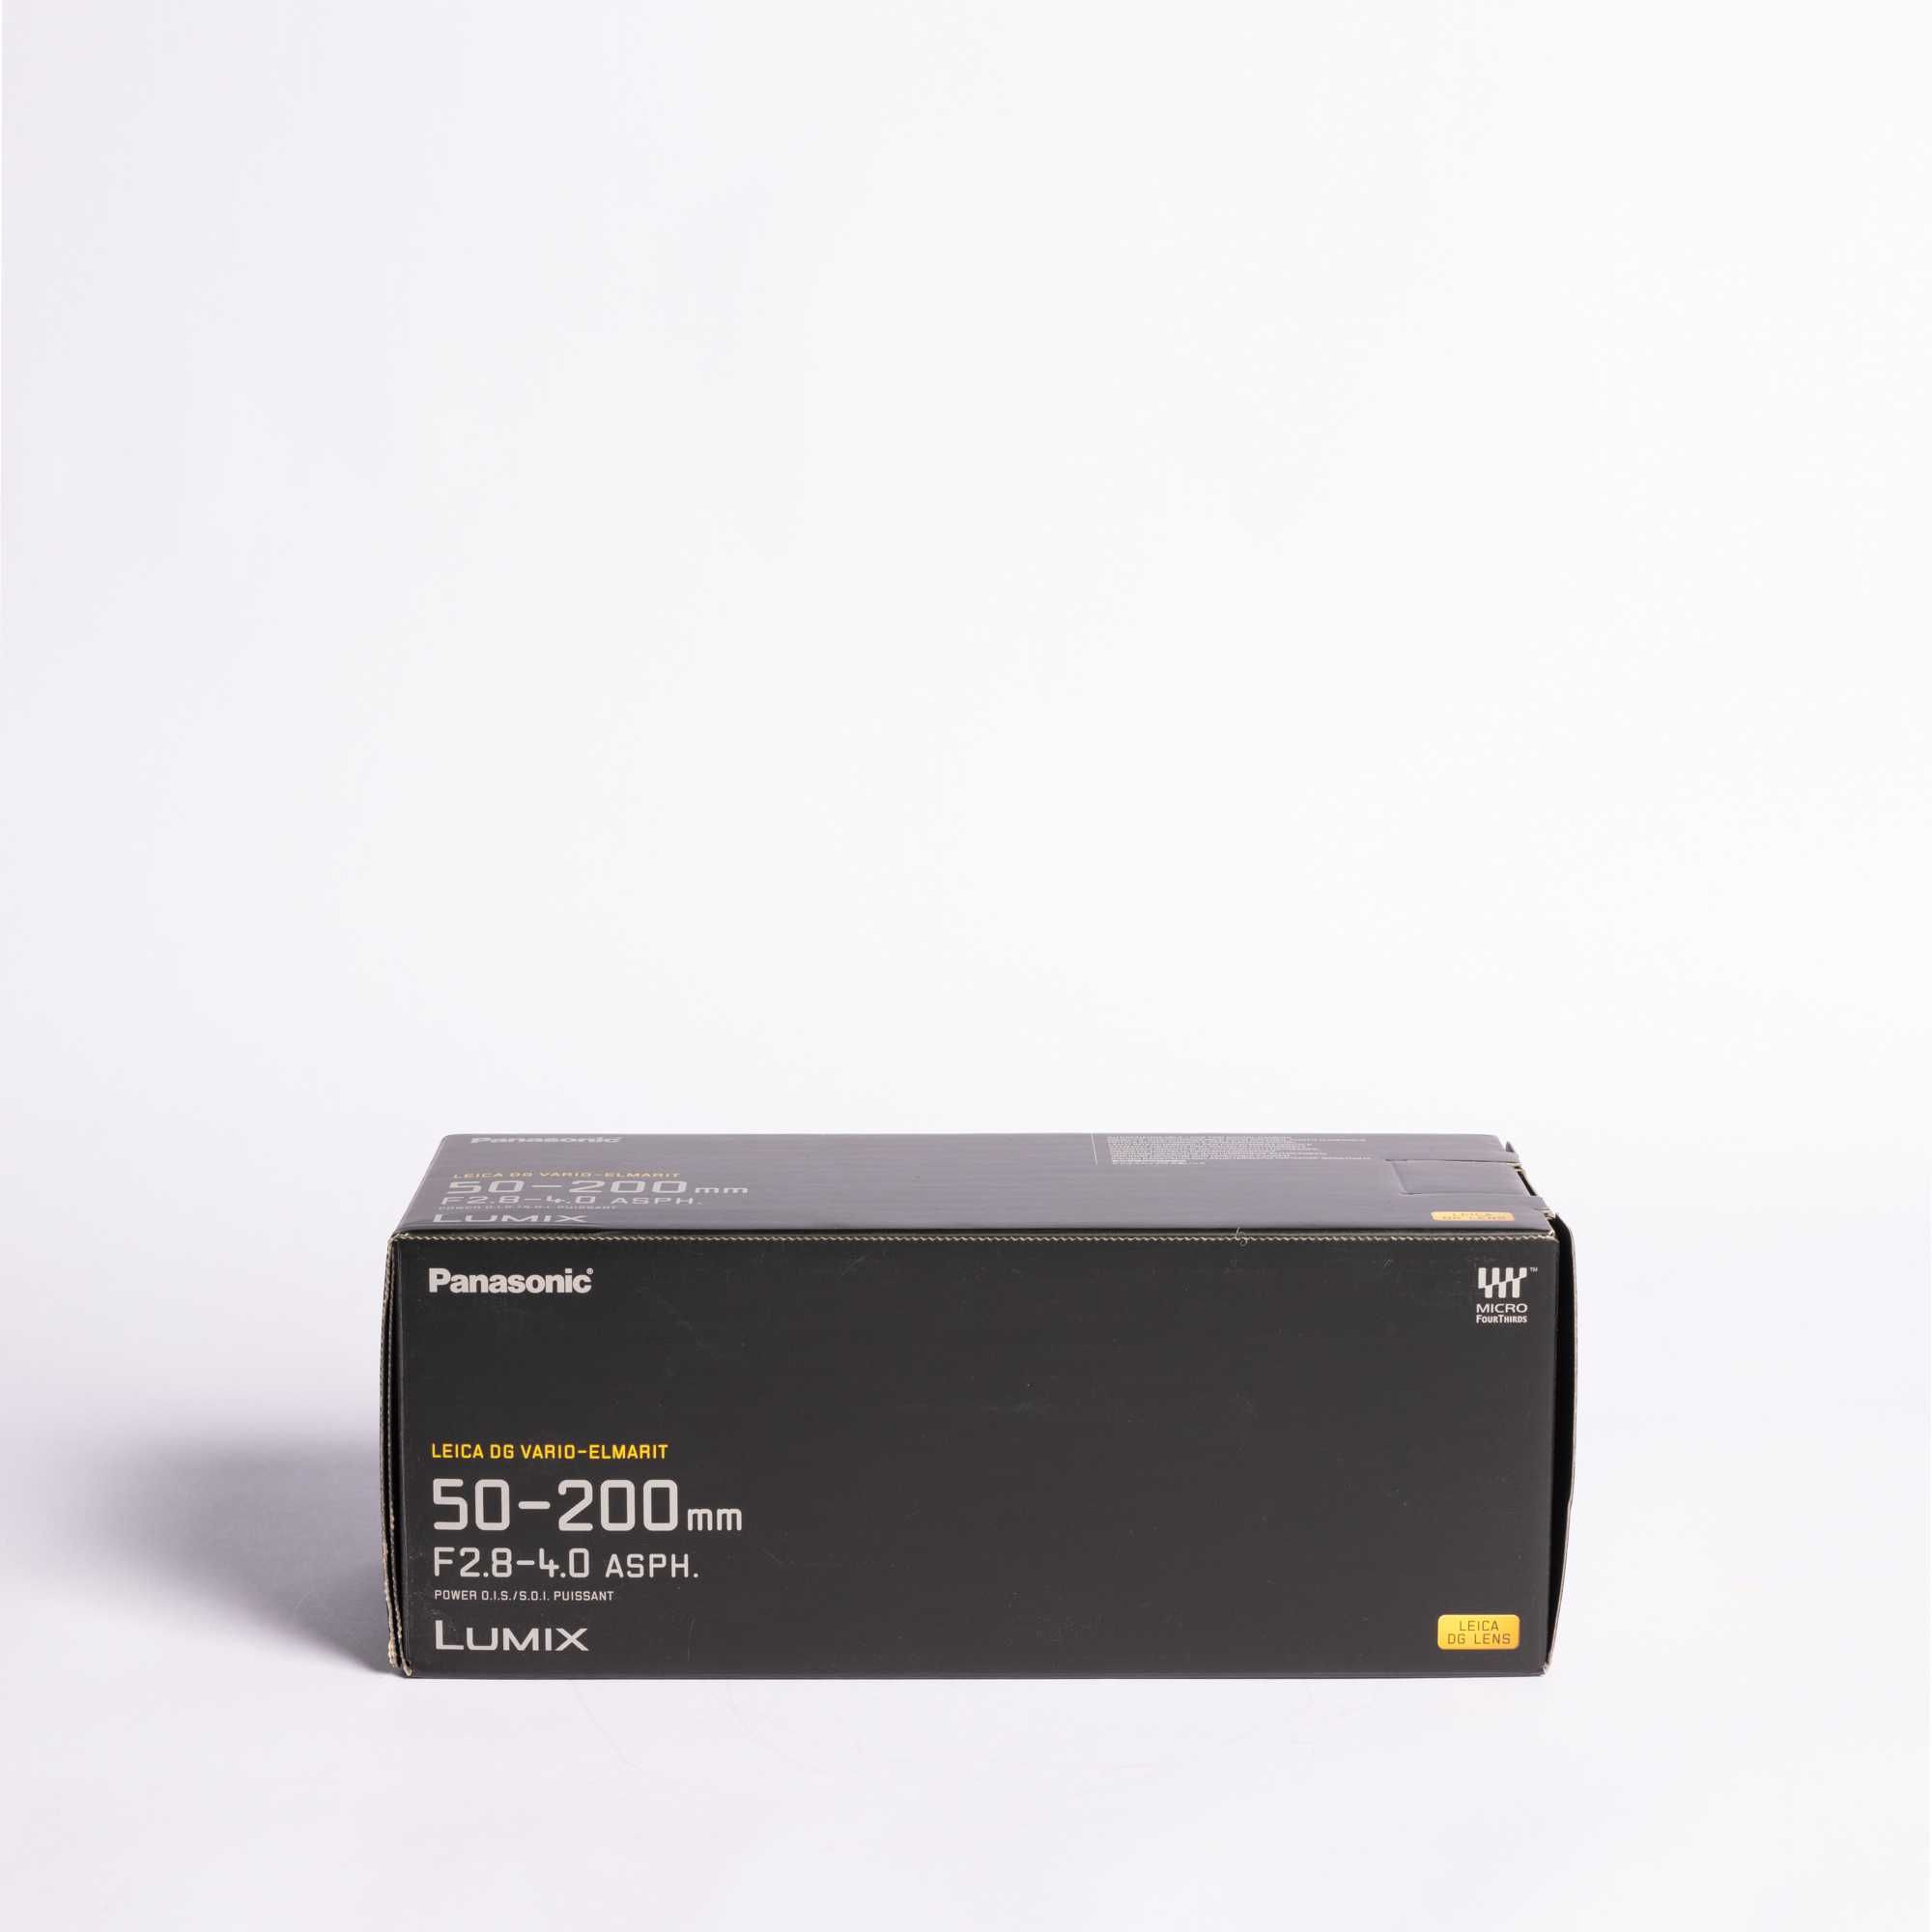 PANASONIC 50-200mm f/2.8-4.0 (Em Ógimo Estado, com Caixa Original)